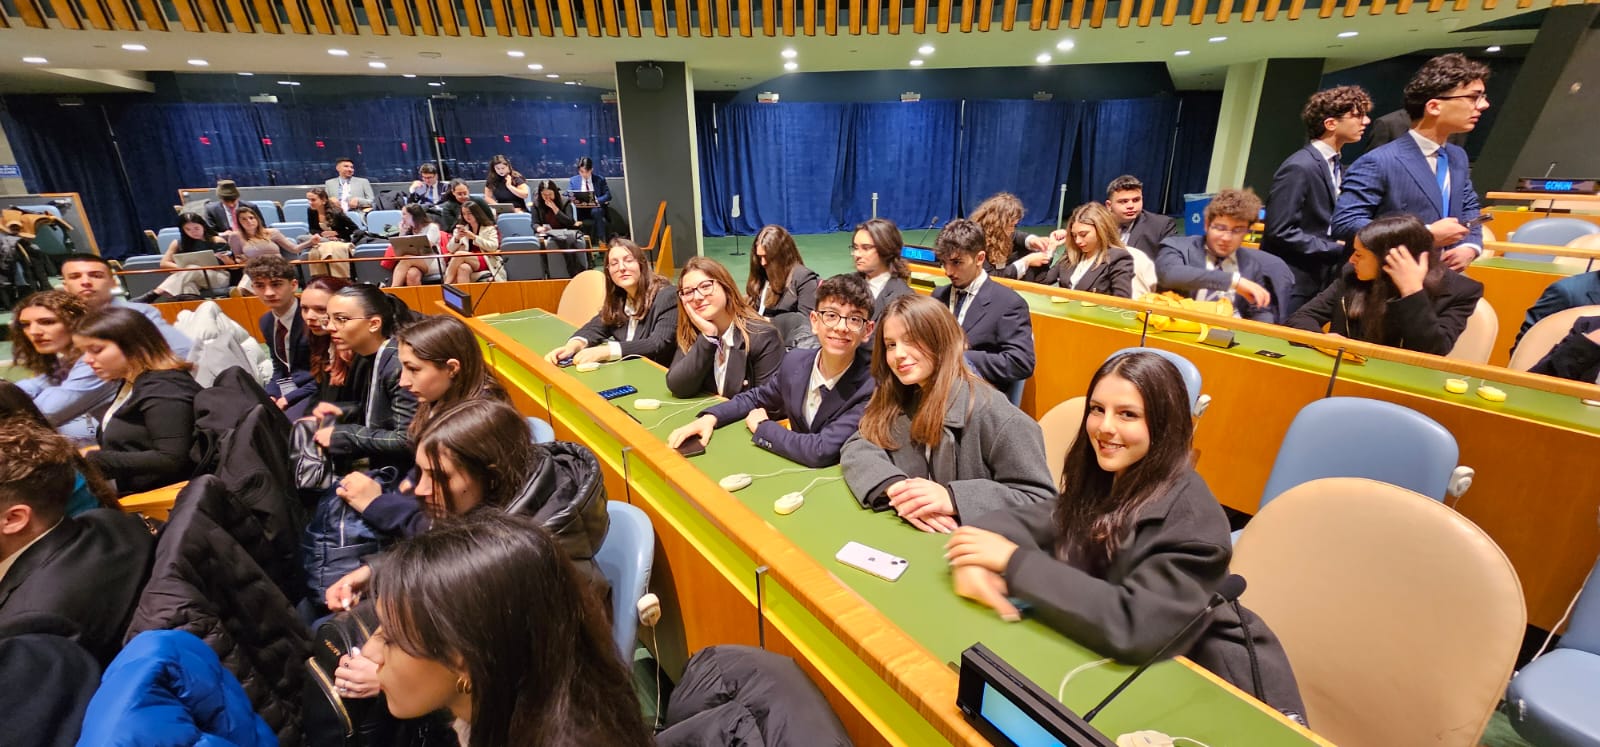 Caltanissetta. Esperienza formativa per gli studenti dell’IISS “Luigi Russo” a New York con il progetto Muner  dell’Onu